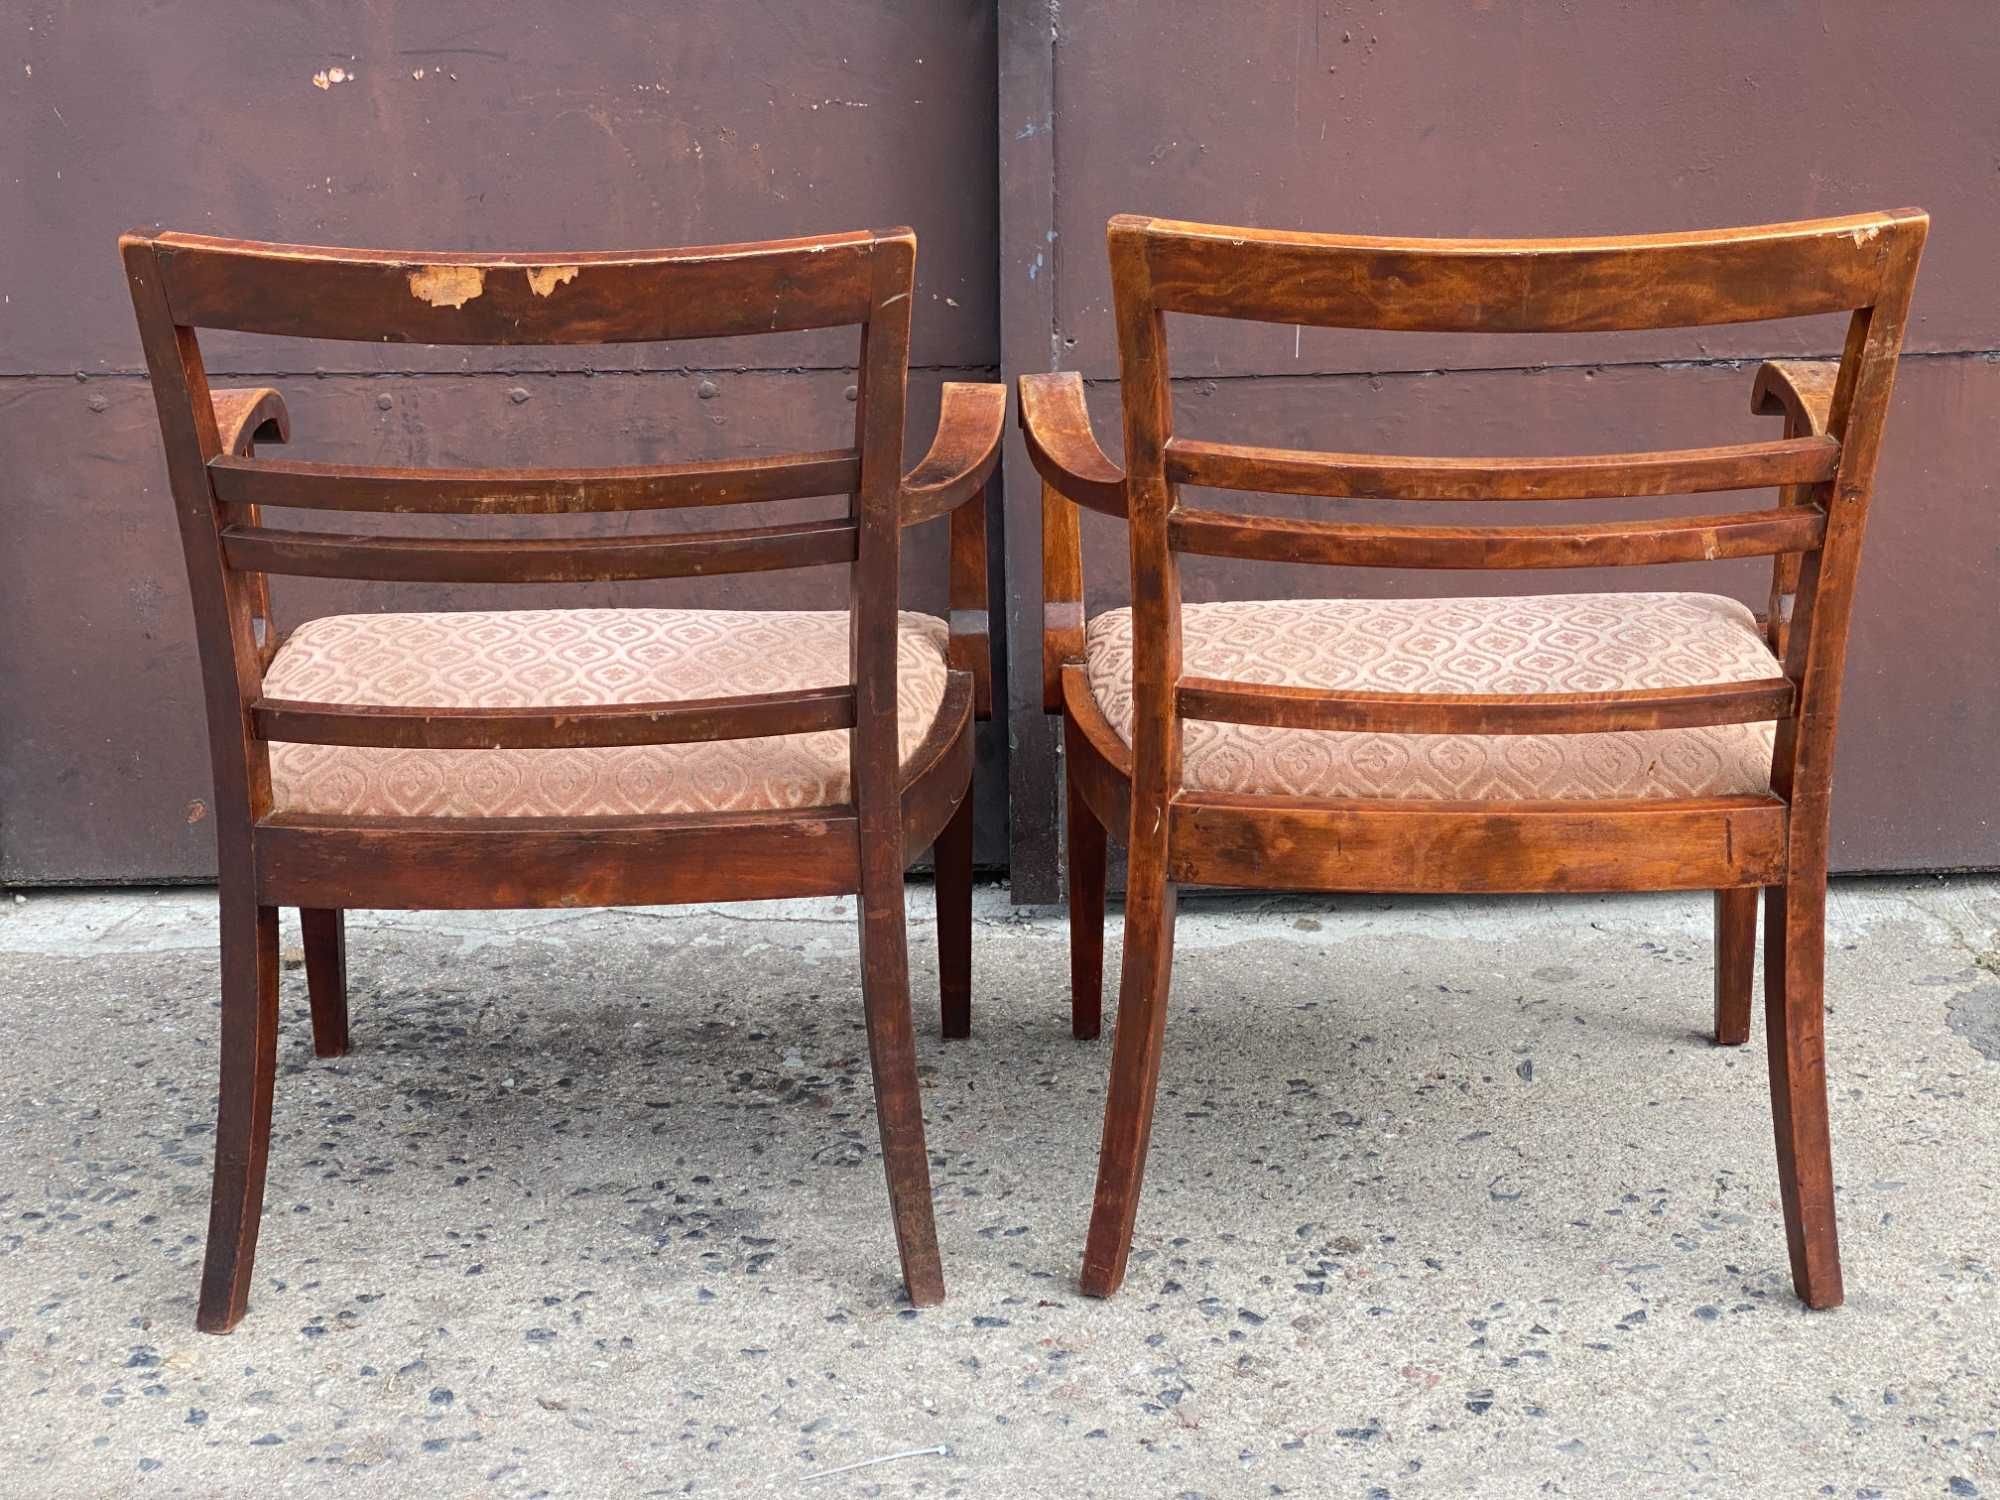 001 Para starych foteli stylowych, 2 drewniane fotele